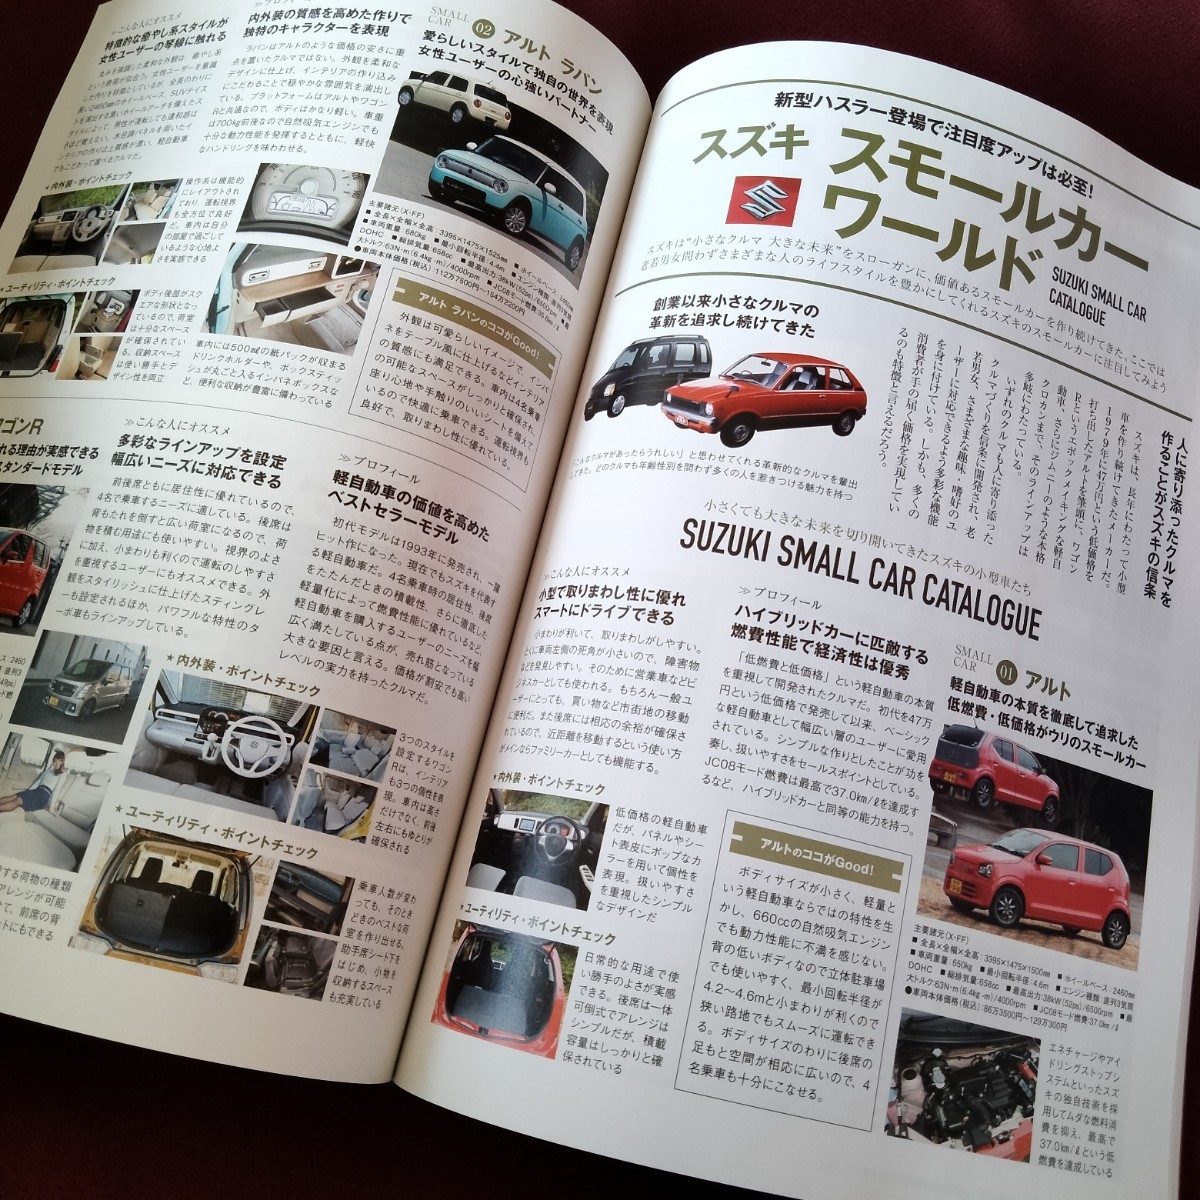  редкость! новый машина срочное сообщение Suzuki Hustler 97 страница 2020 год 3 месяц выпуск Hustler .. каталог Hustler. все Suzuki. все 